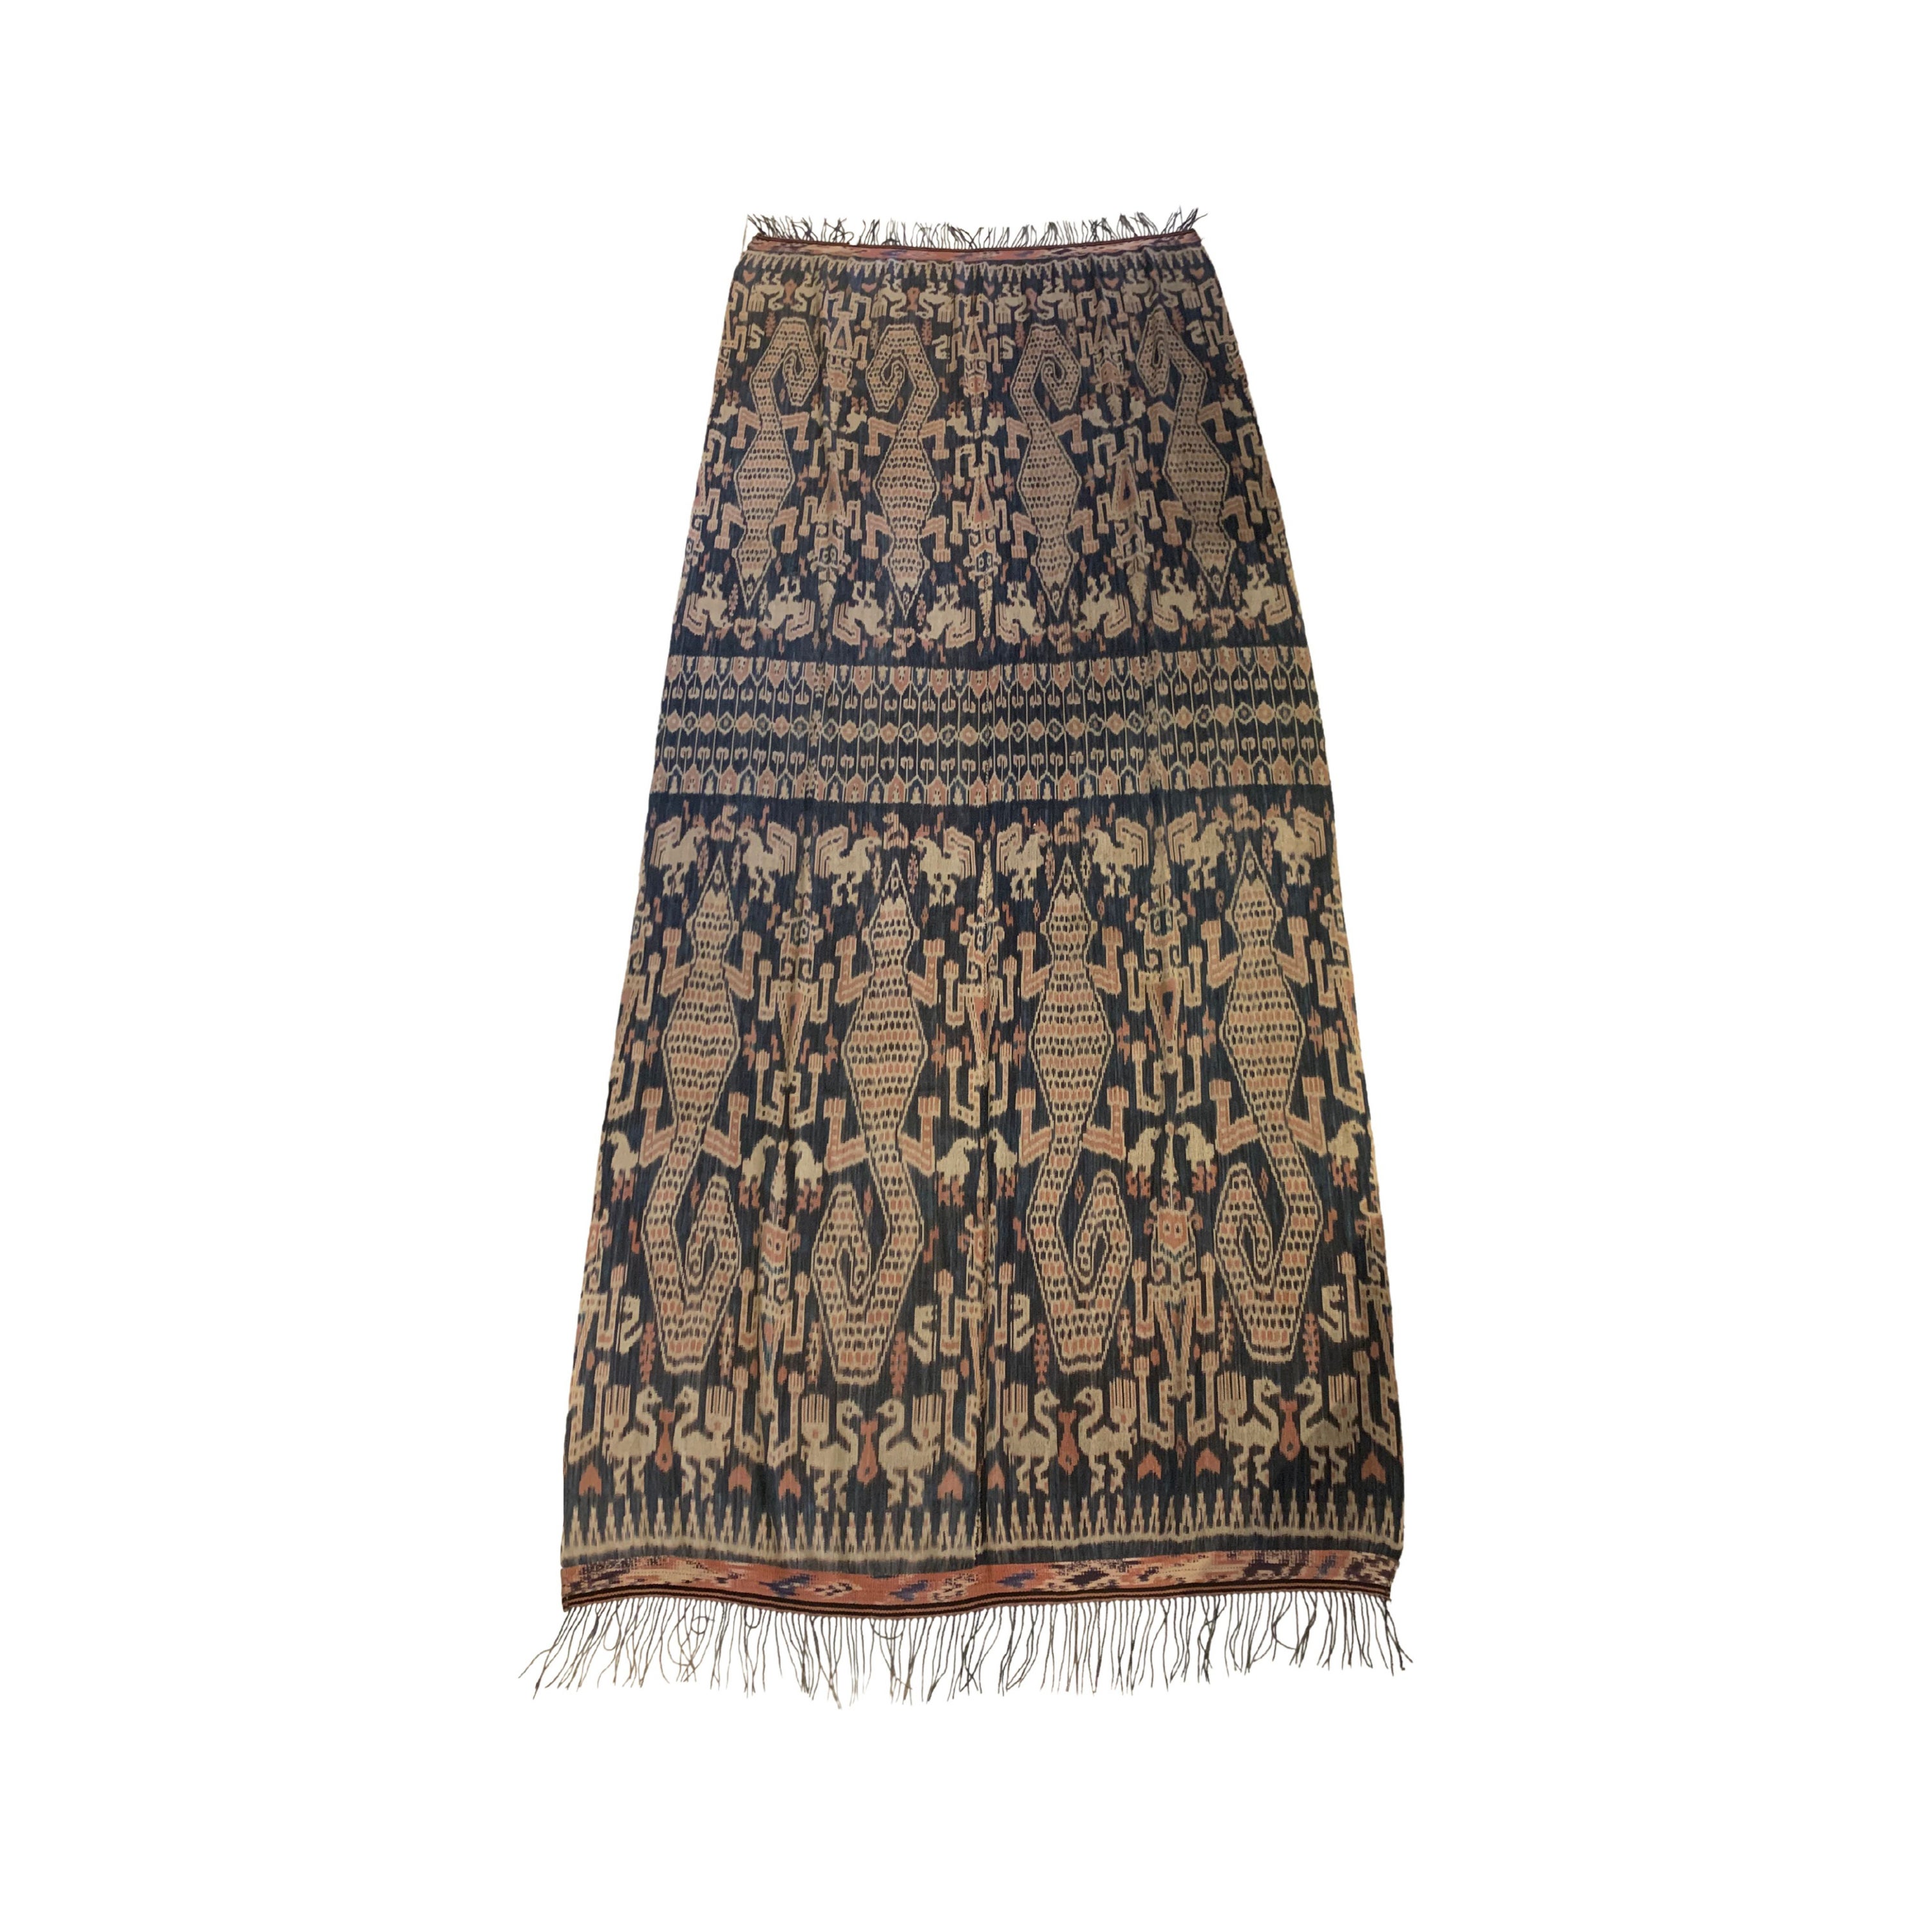 Ikat-Textilien mit Stammesmotiven von der Insel Sumba, Indonesien